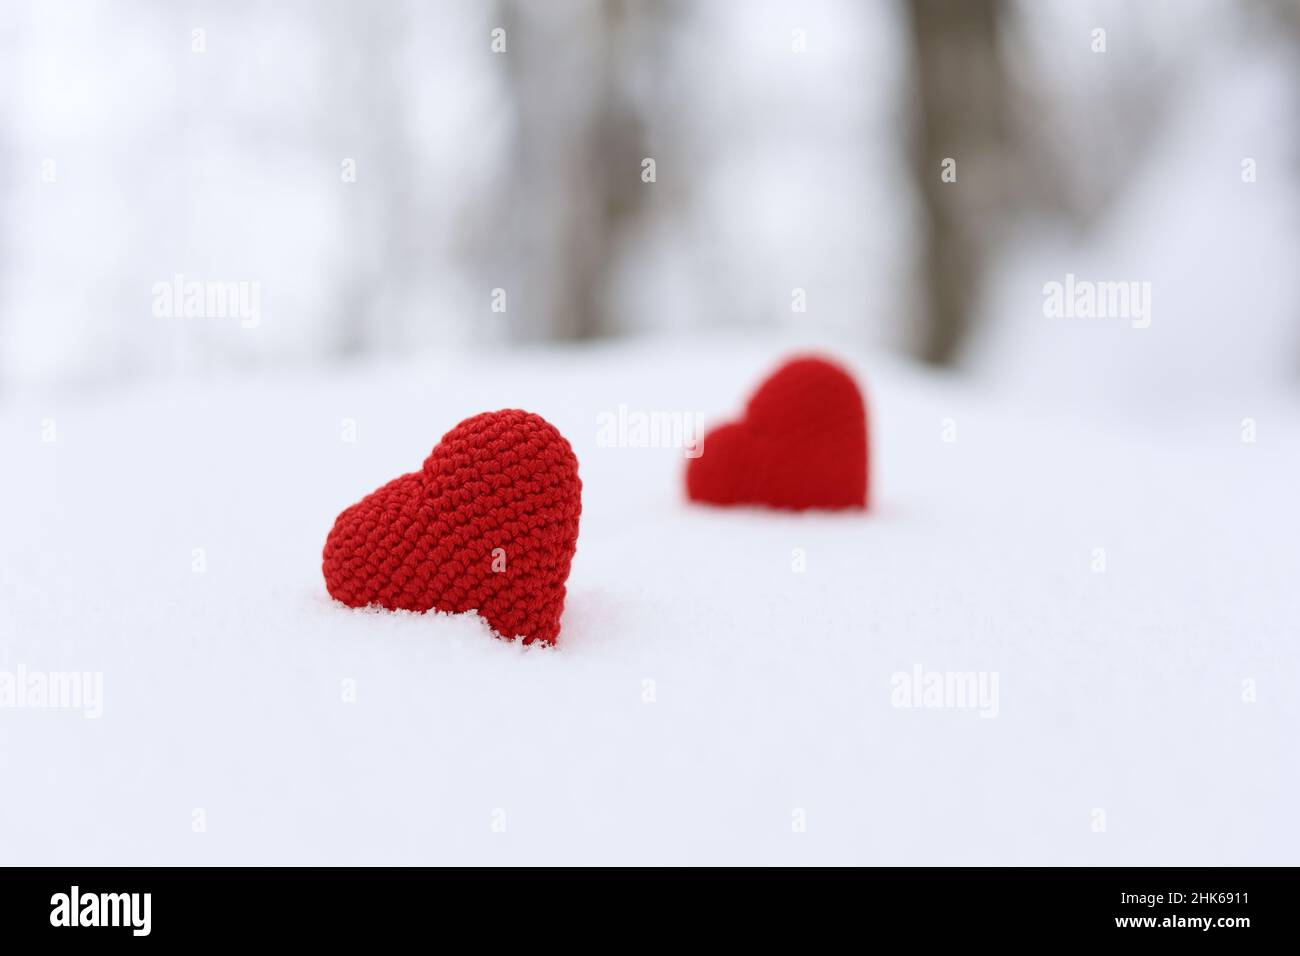 Liebesherzen, Valentinskarte, zwei rote gestrickte Symbole der Leidenschaft im Schnee auf Waldhintergrund. Konzept der romantischen Veranstaltung Stockfoto